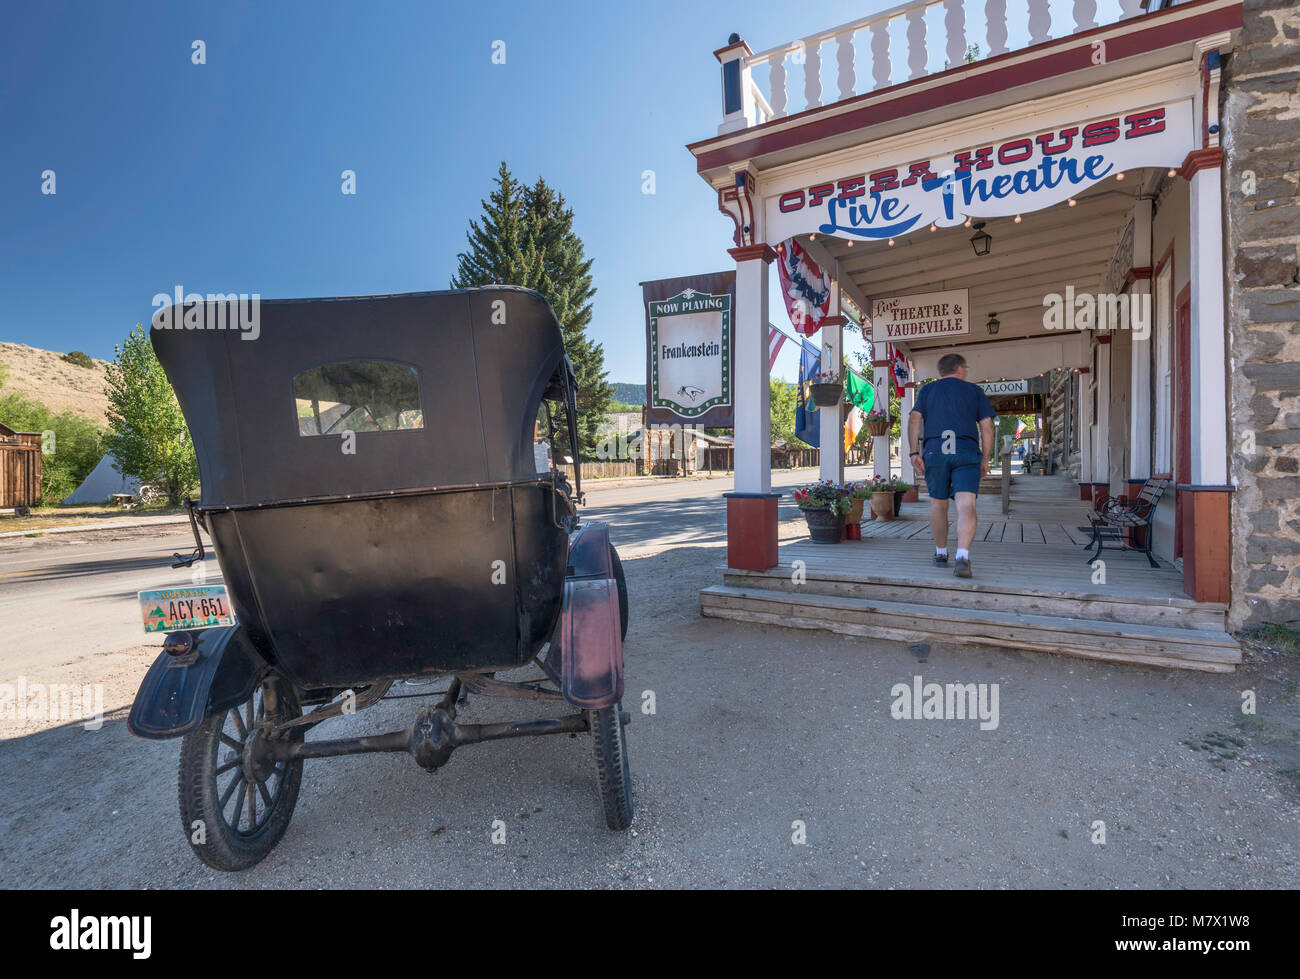 Ford Modello T automobile di fronte Smith & Boyd livrea stabile, ca 1900, ora Opera House, nella città fantasma di Virginia City, Montana, USA Foto Stock